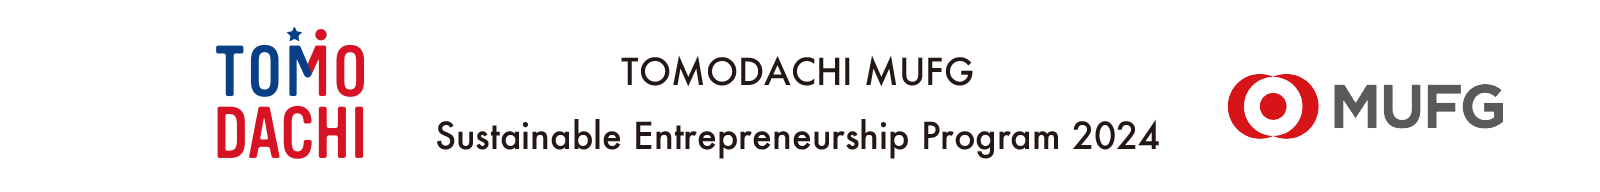 TOMODACHI MUFG Sustainable Entrepreneurship Program 2024